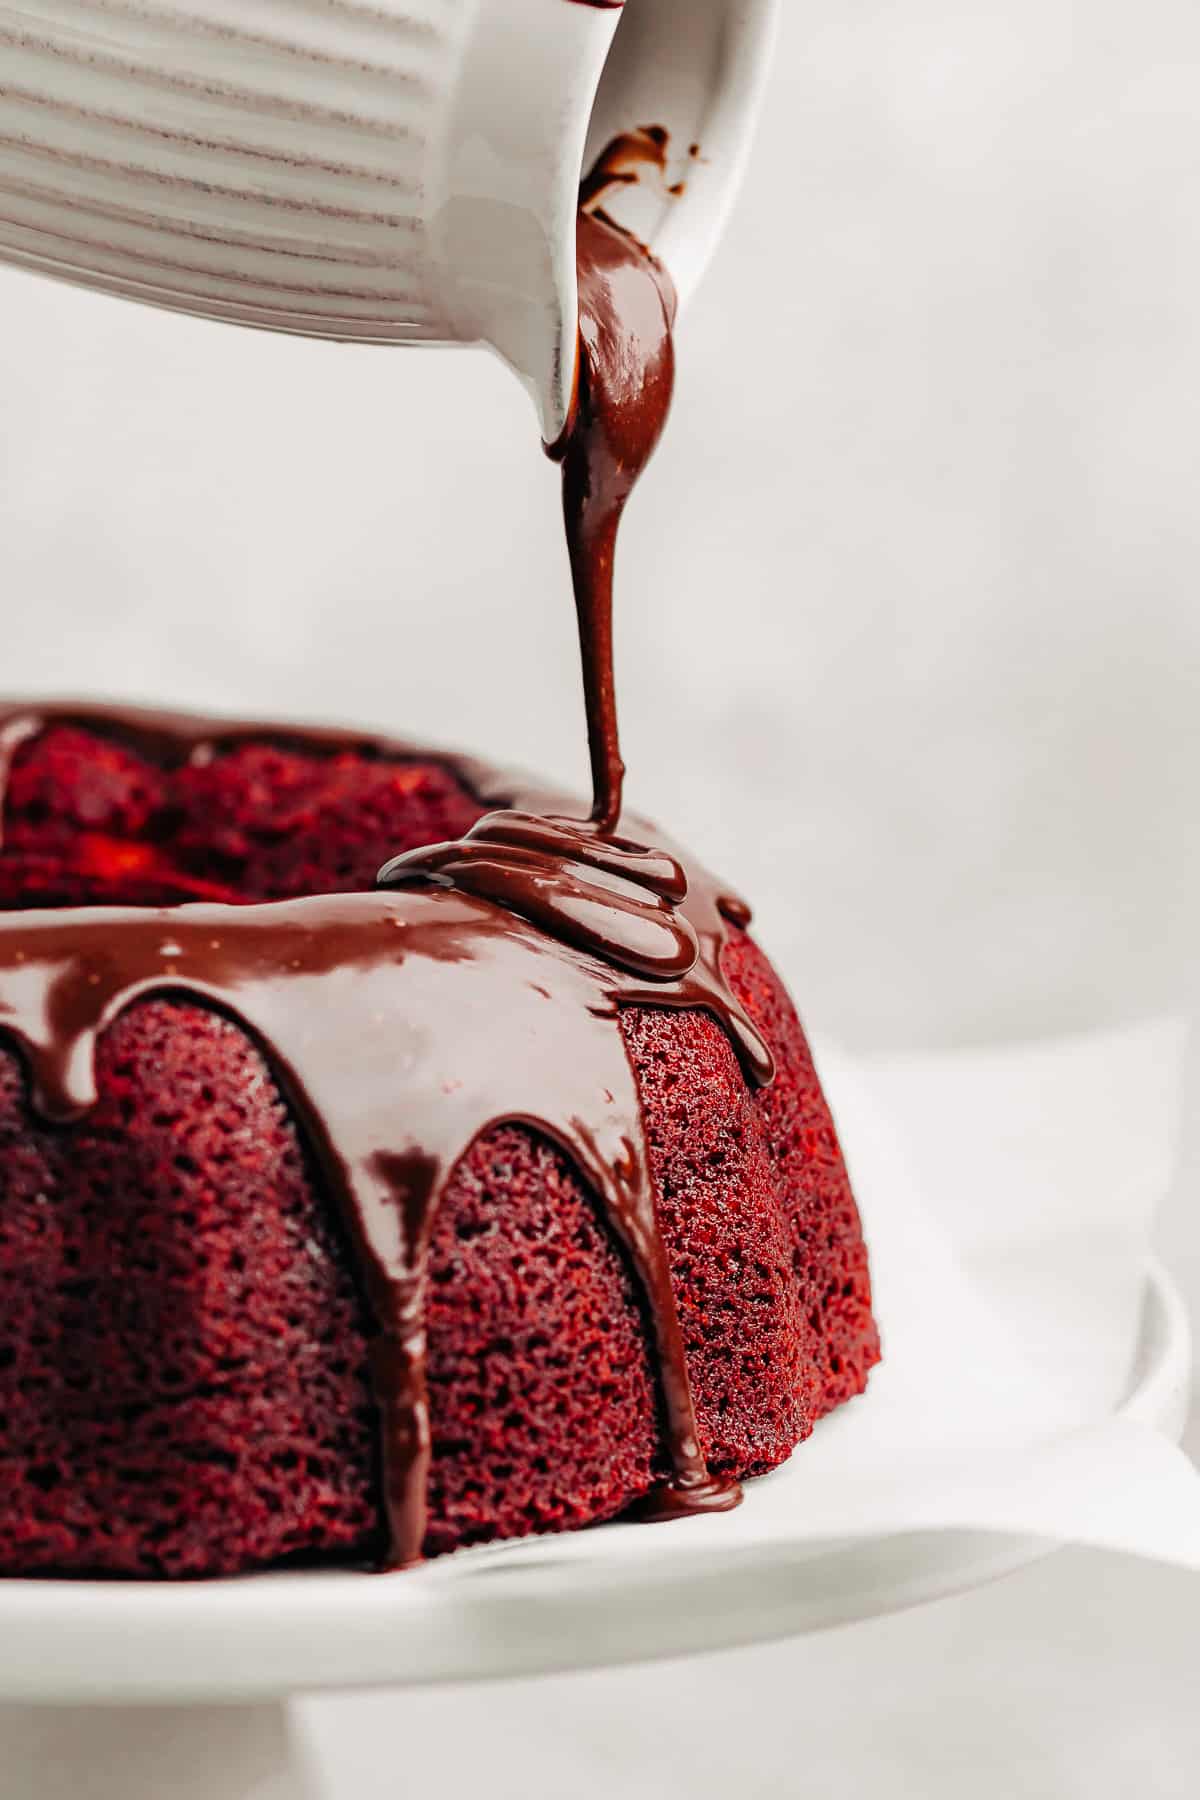 nutella glaze being poured over a Red Velvet Bundt Cake.